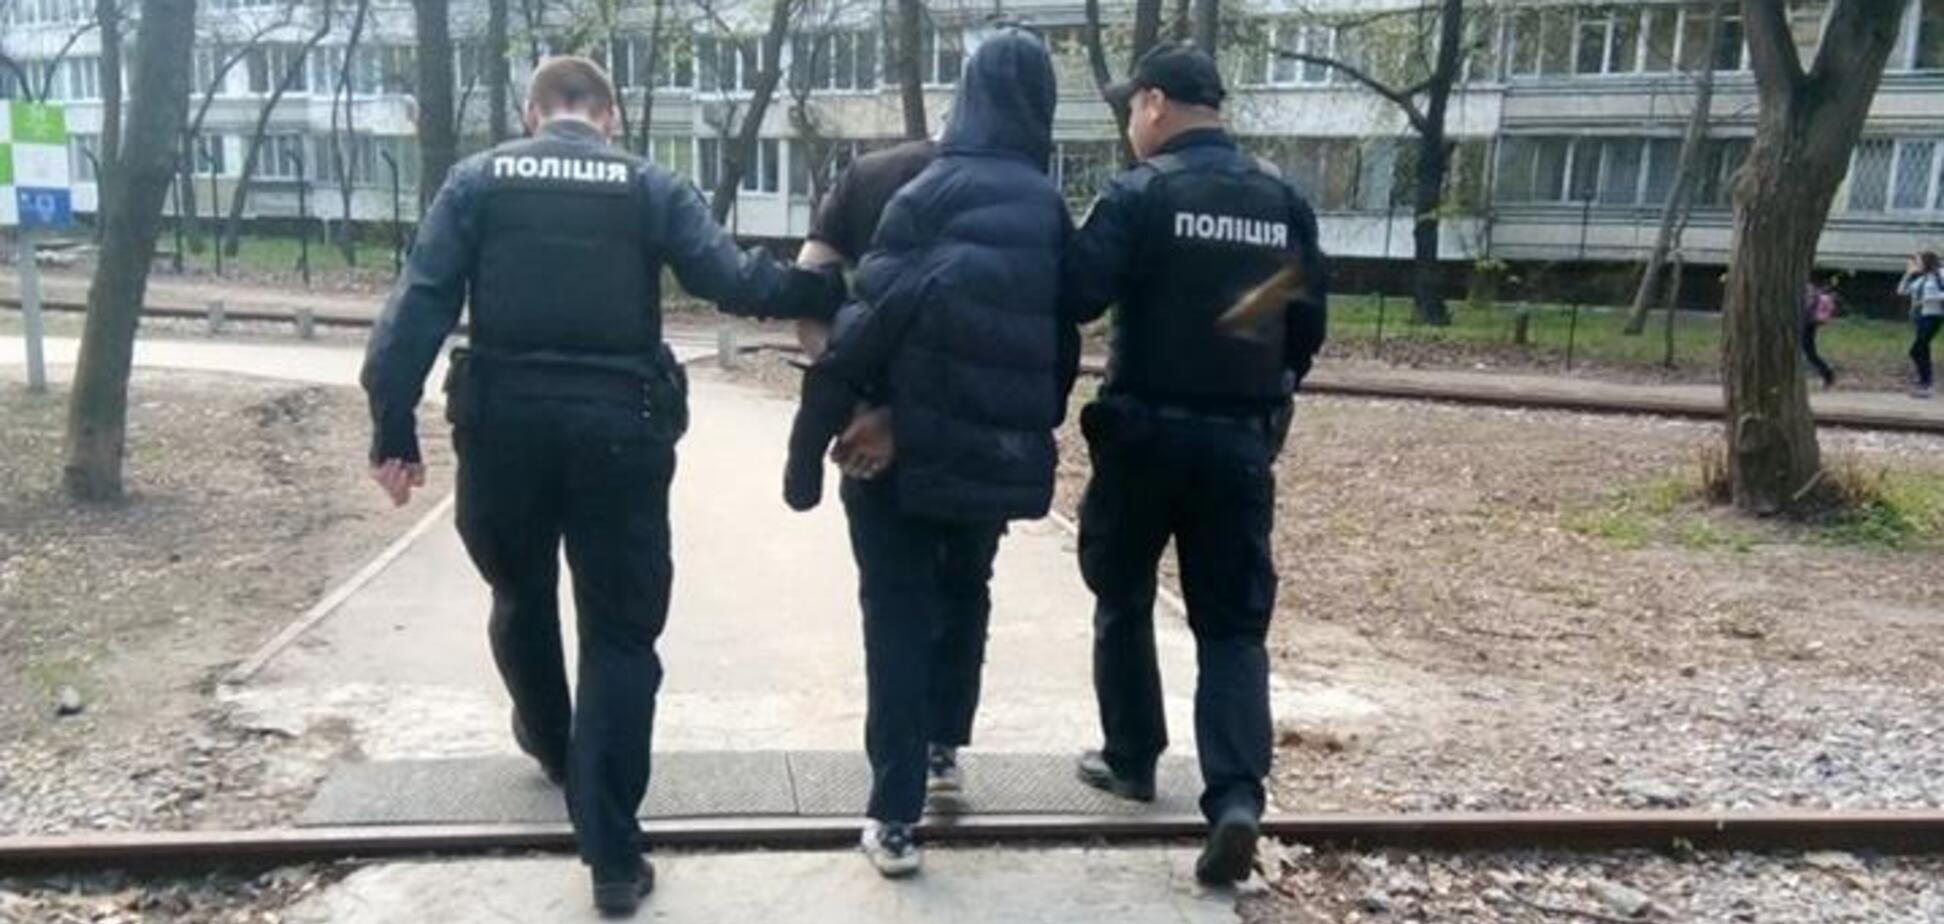 'Муниципальная охрана' задержала пьяного дебошира в Сырецком парке